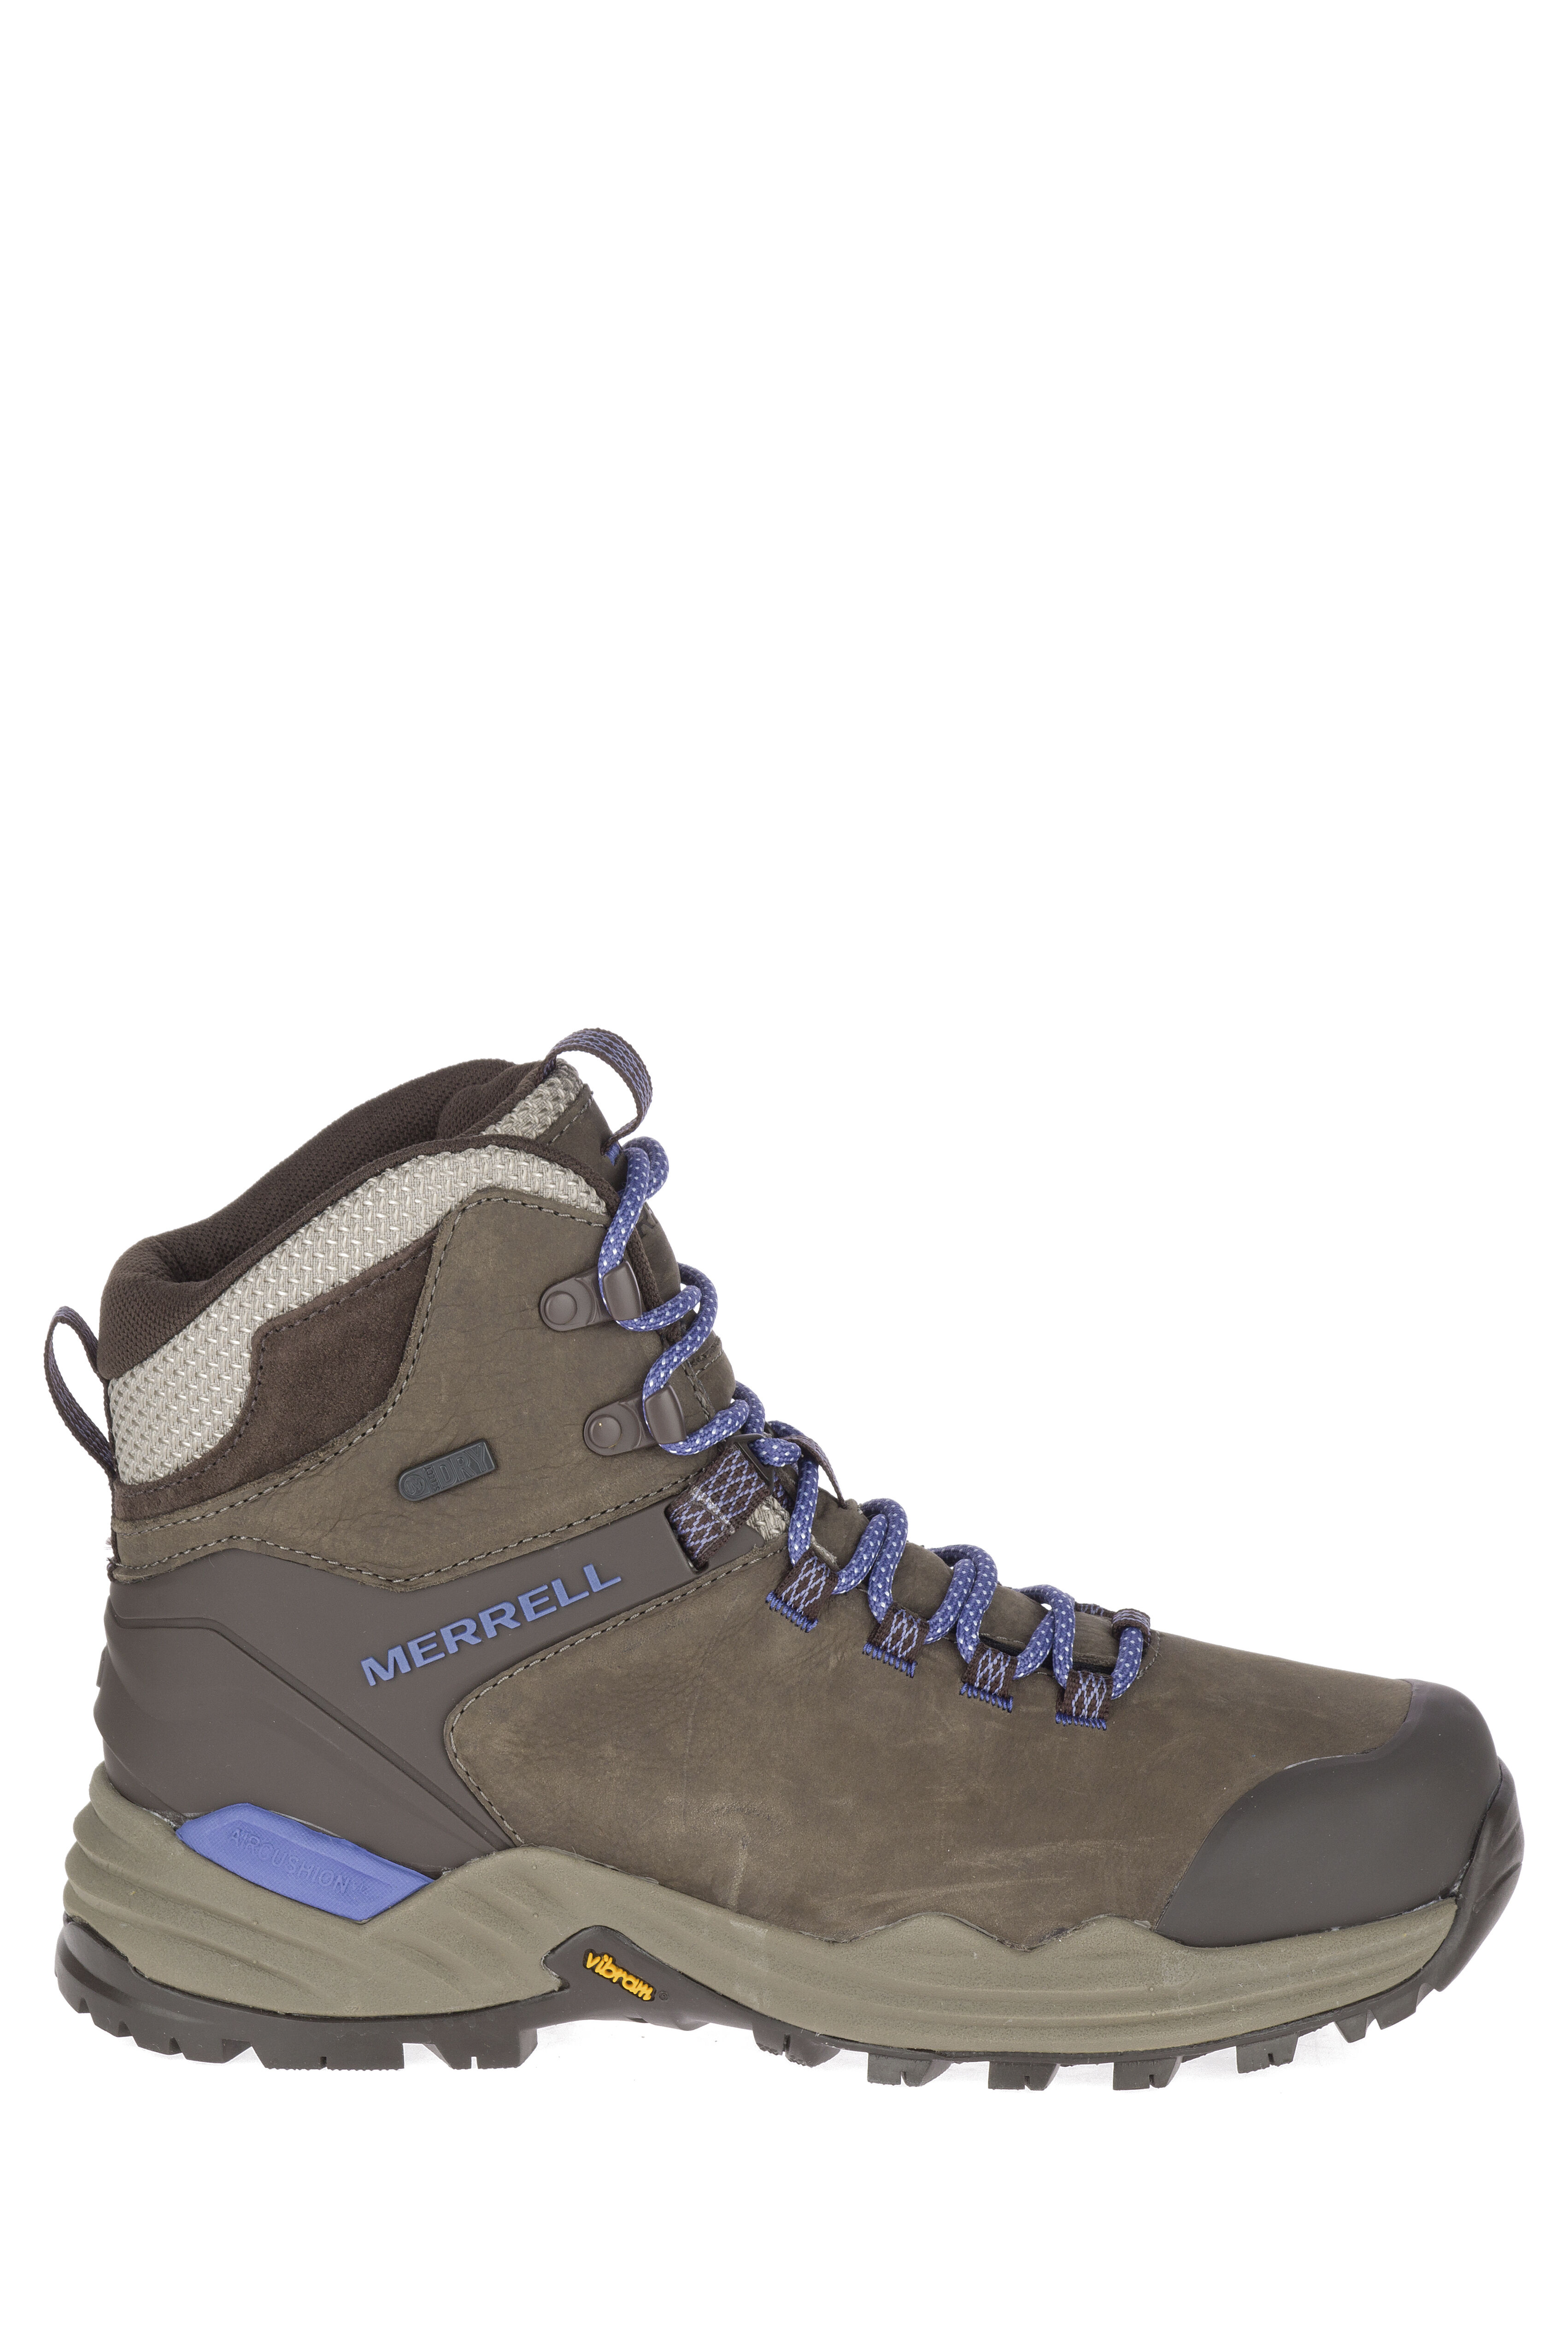 steel toe hiking boots women's